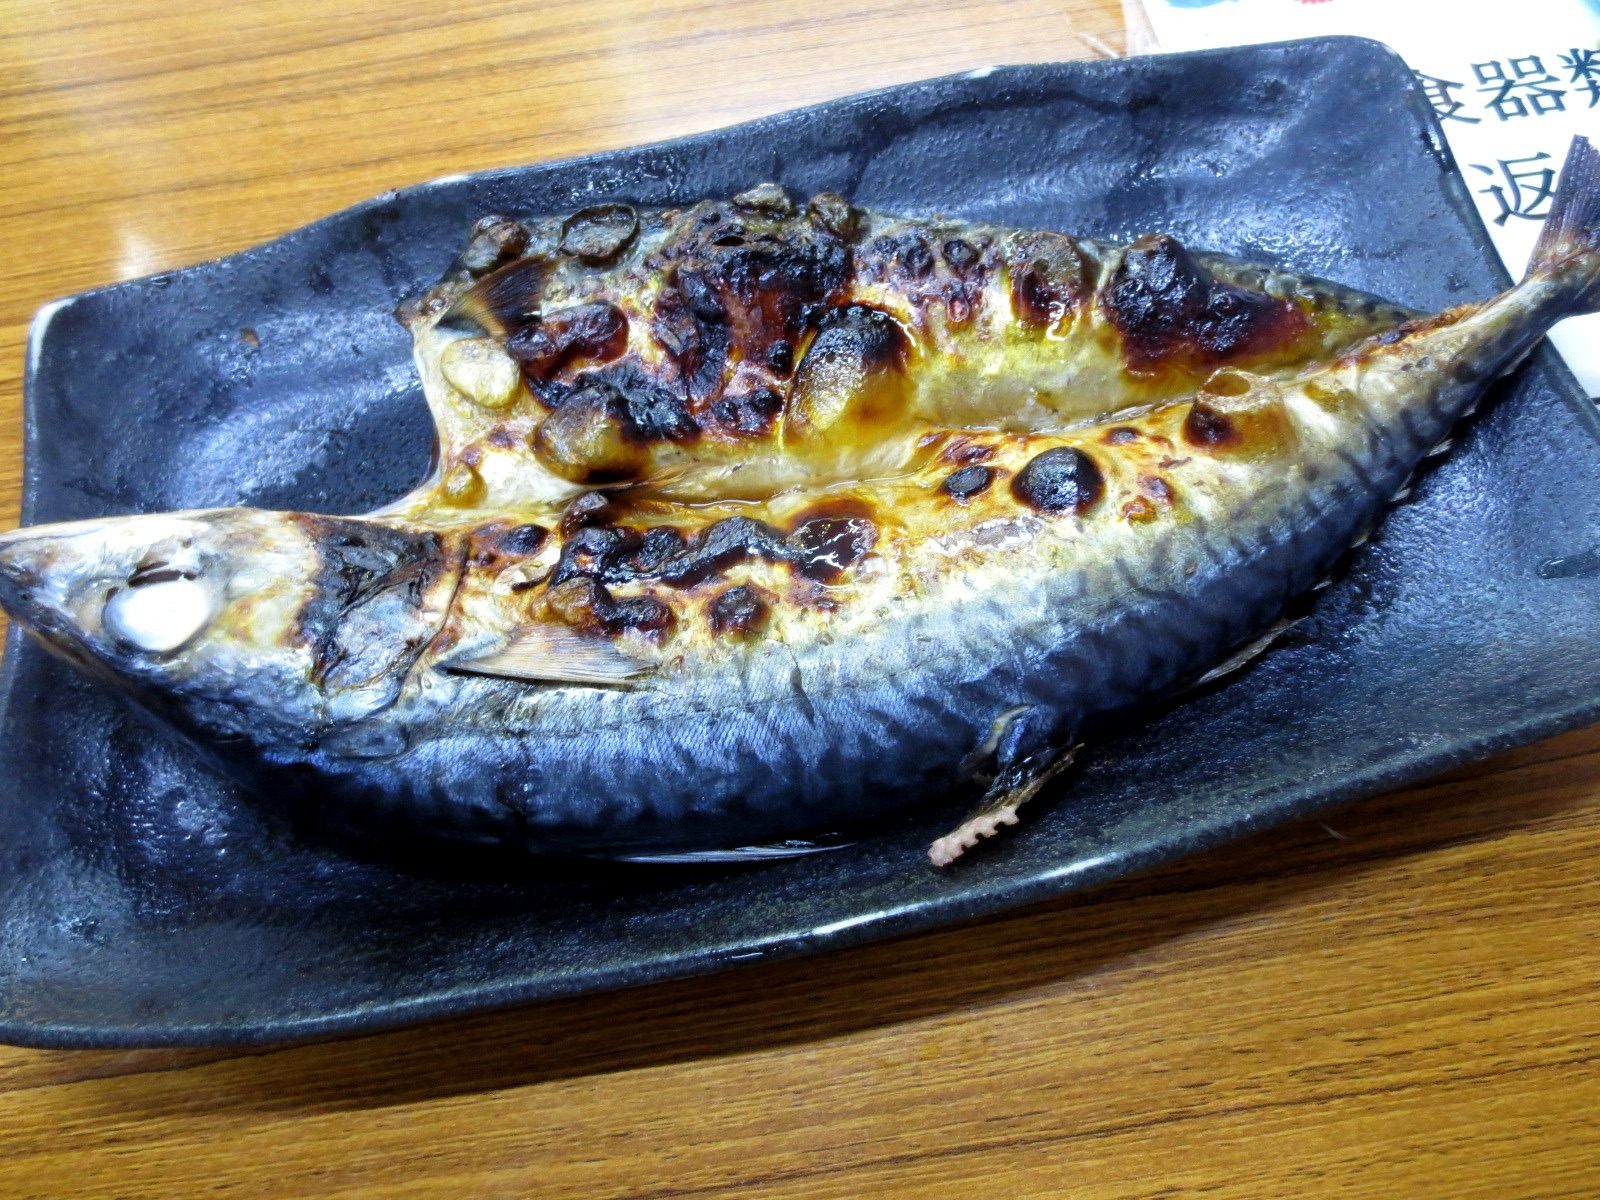 在京都 舞鶴港tore Tore Center 品嘗新鮮魚貝料理的美味 好運日本行